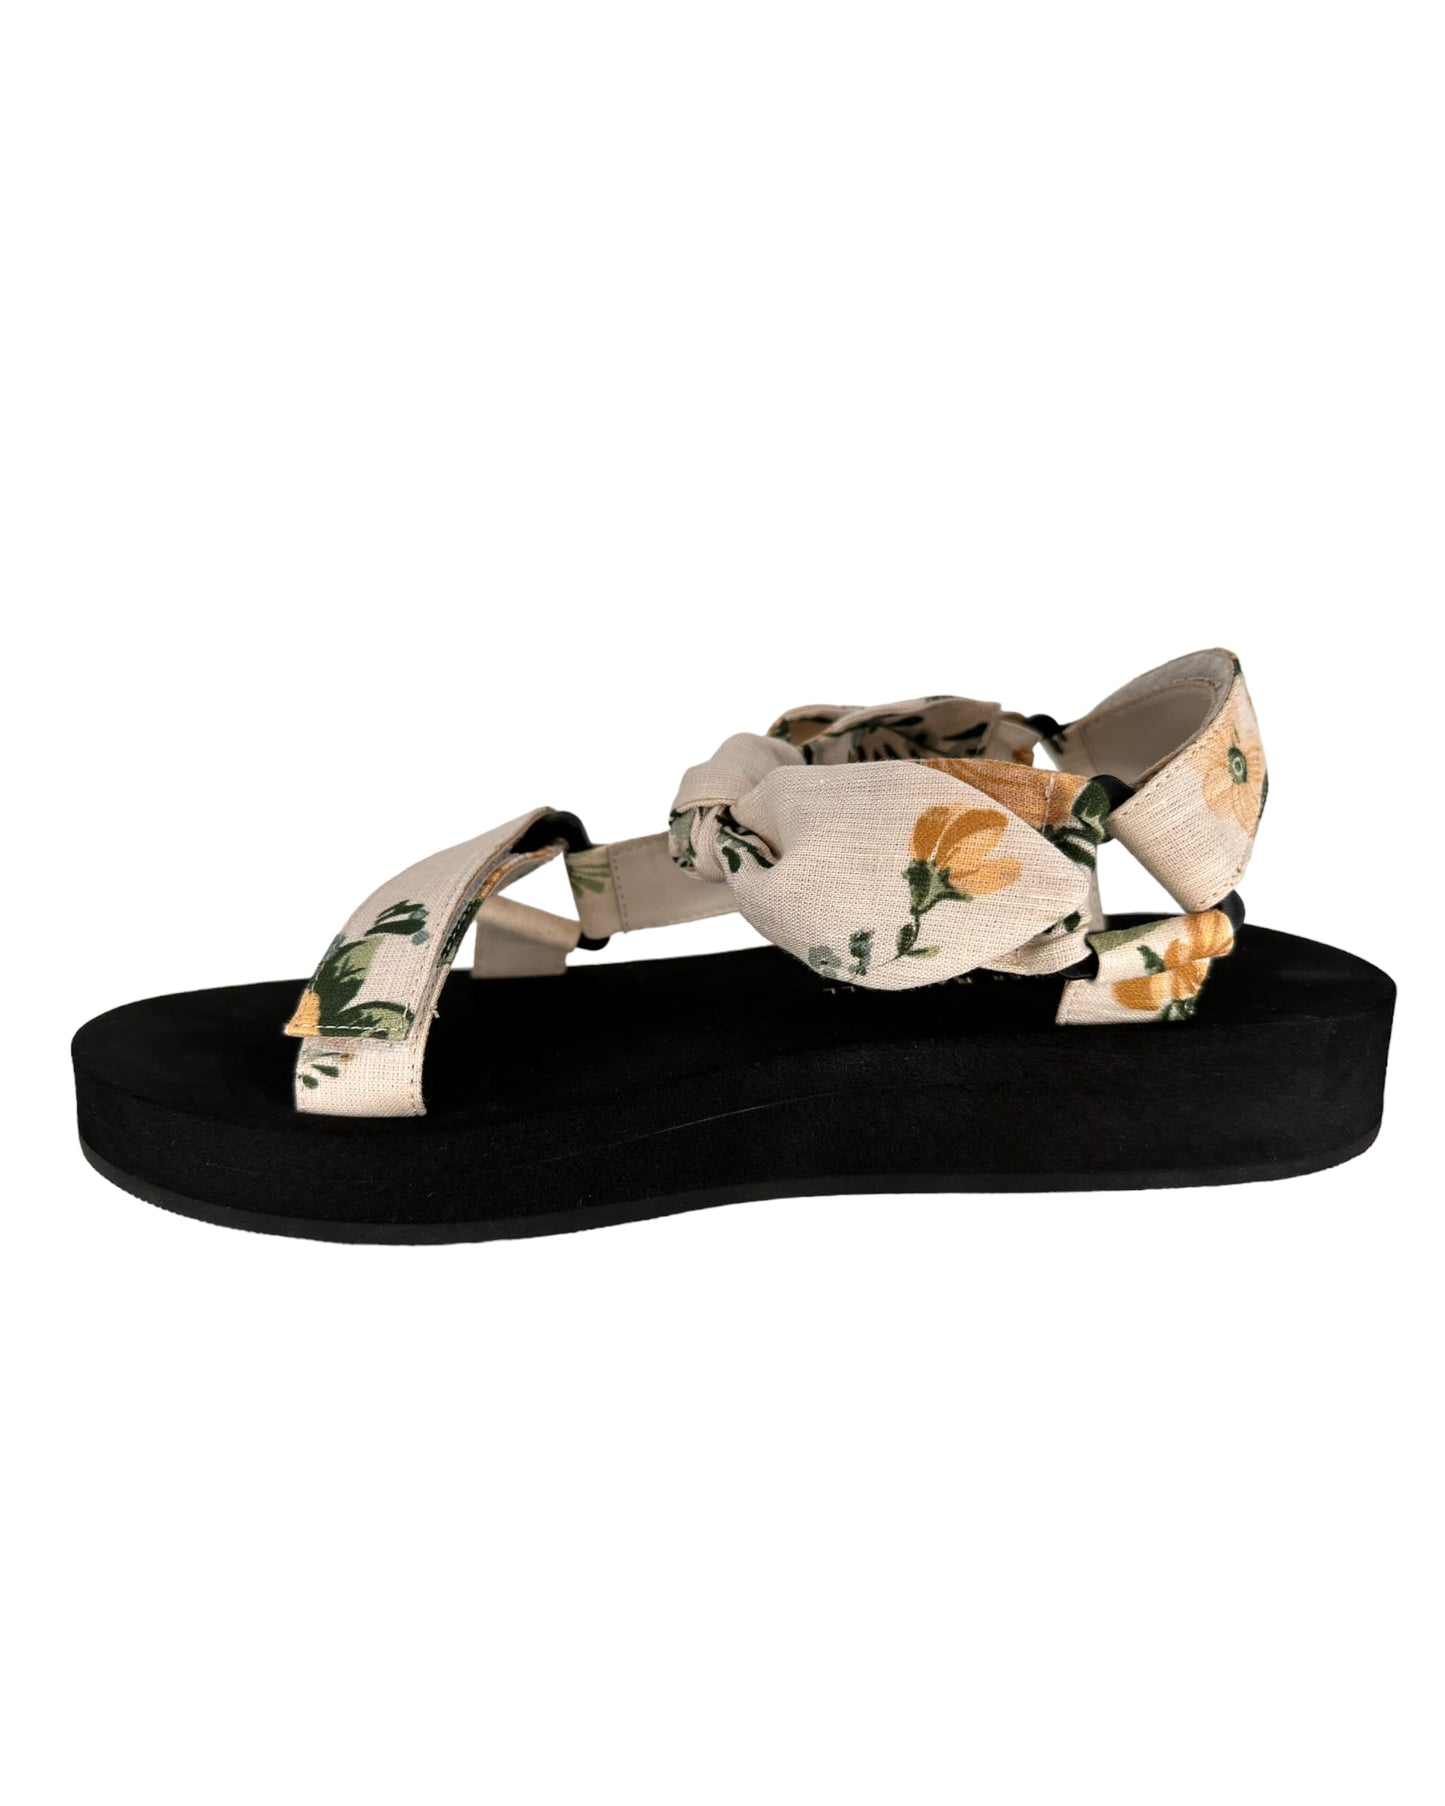 Maisie Nova floral sandals